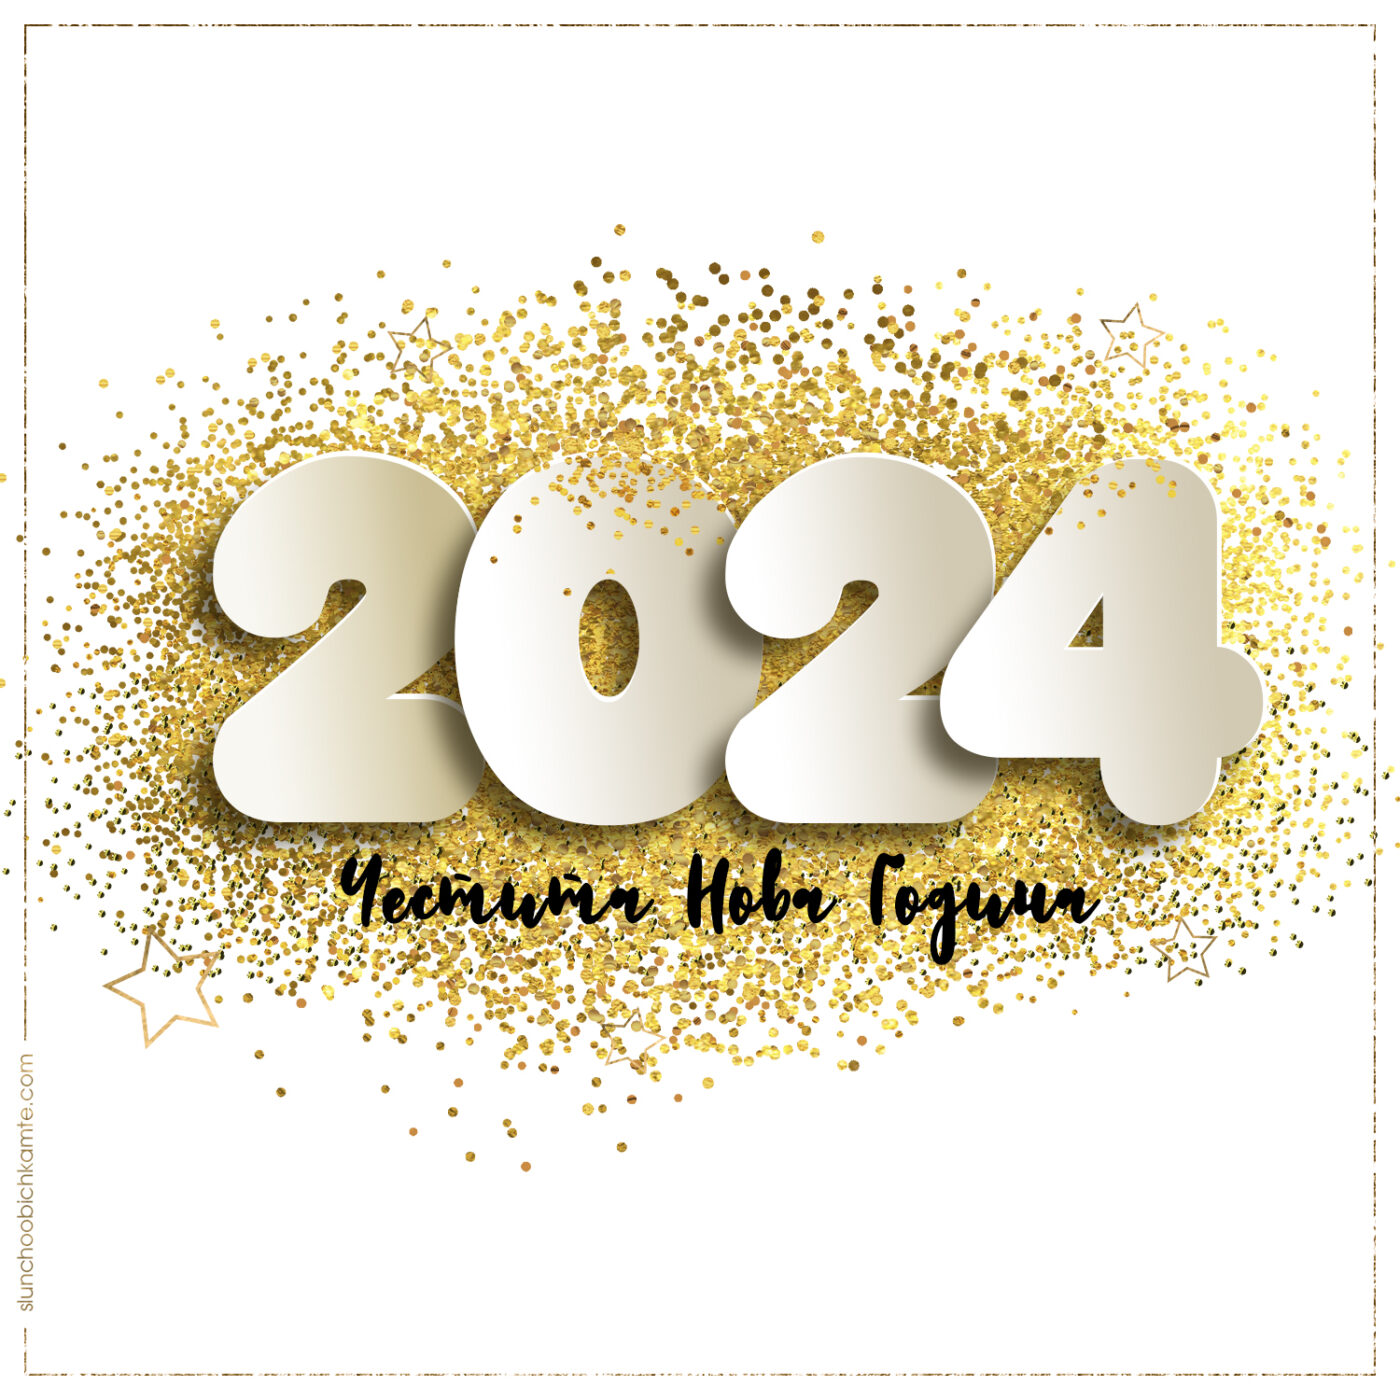 2024 Честита Нова Година - Картички за нова година 2024, новогодишни картички, слънчо обичкам те, слънчо